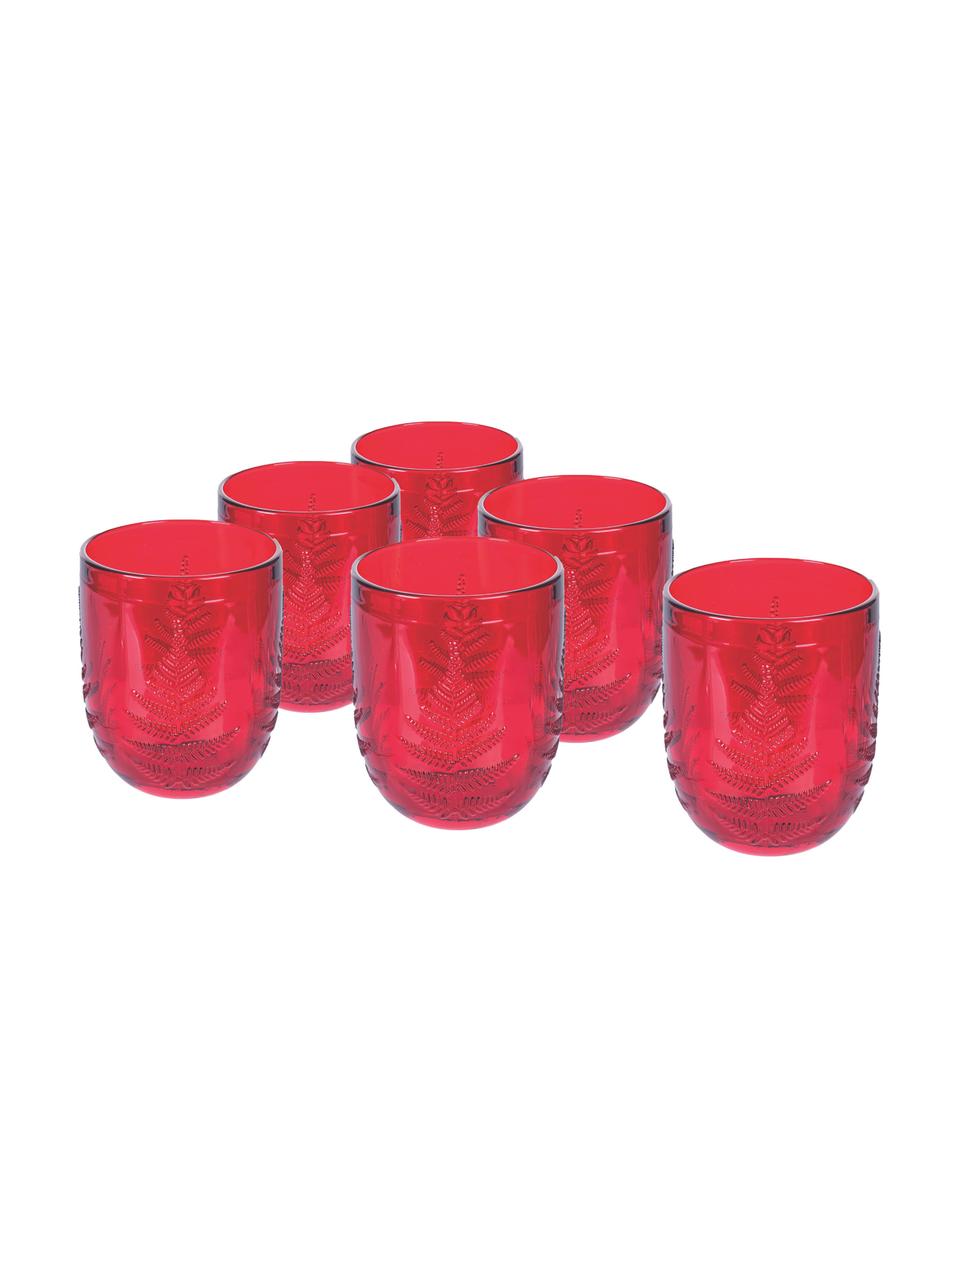 Wassergläser Aspen in Rot mit weihnachtlichem Strukturmuster, 6 Stück, Glas, Rot, Ø 8 x H 10 cm, 250 ml